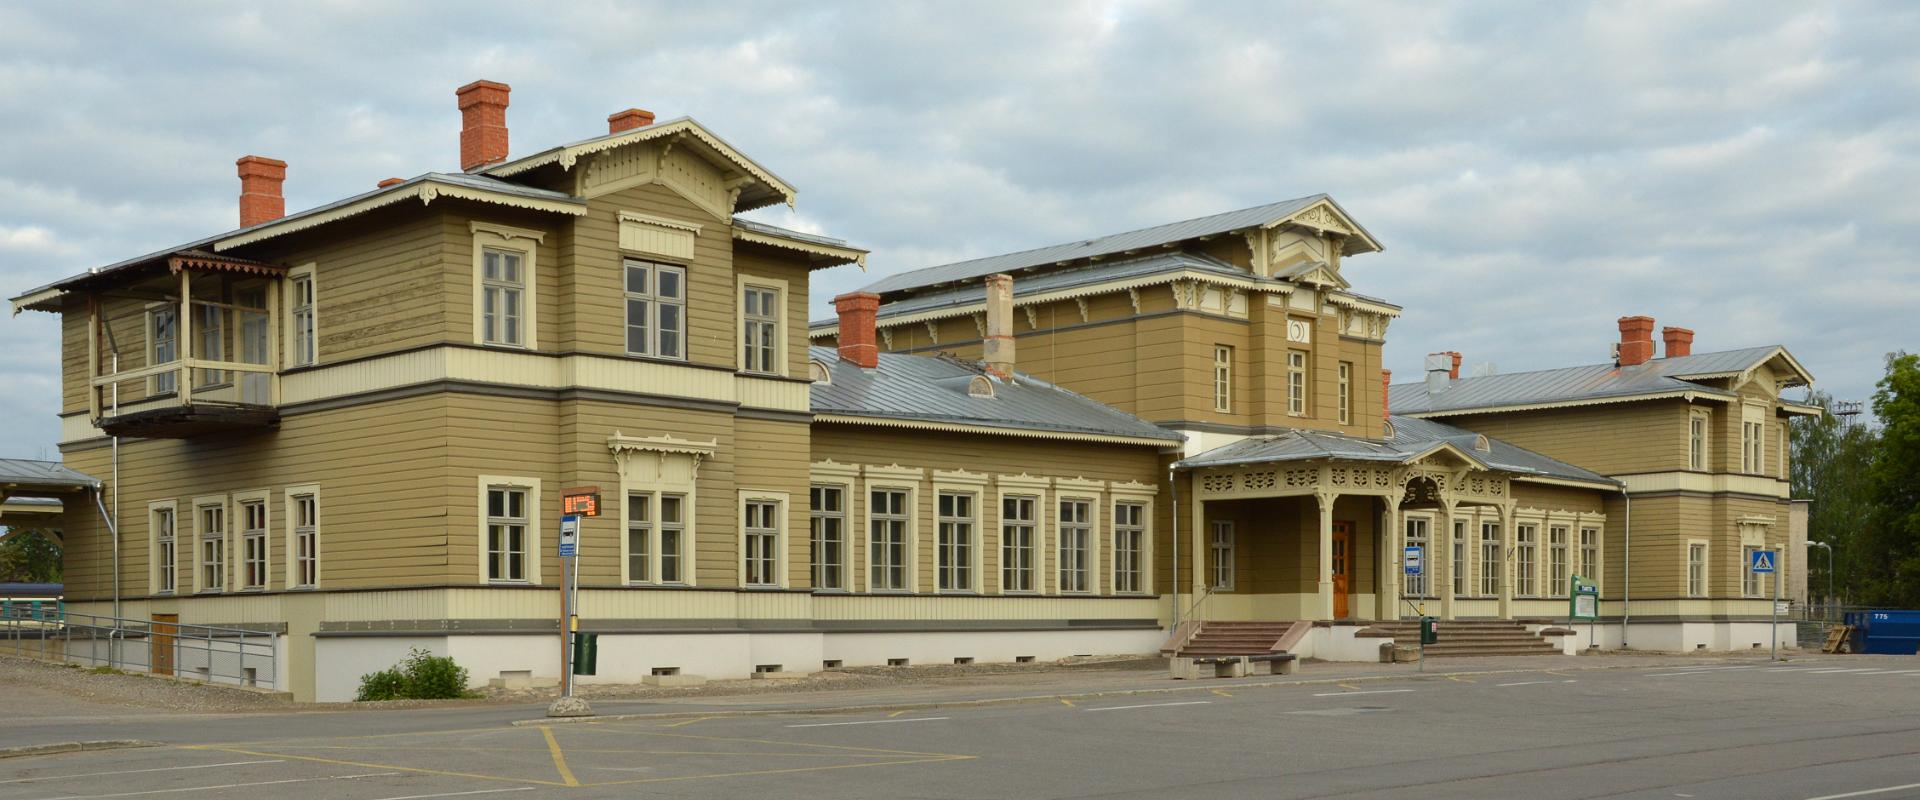 Tarton rautatieasema